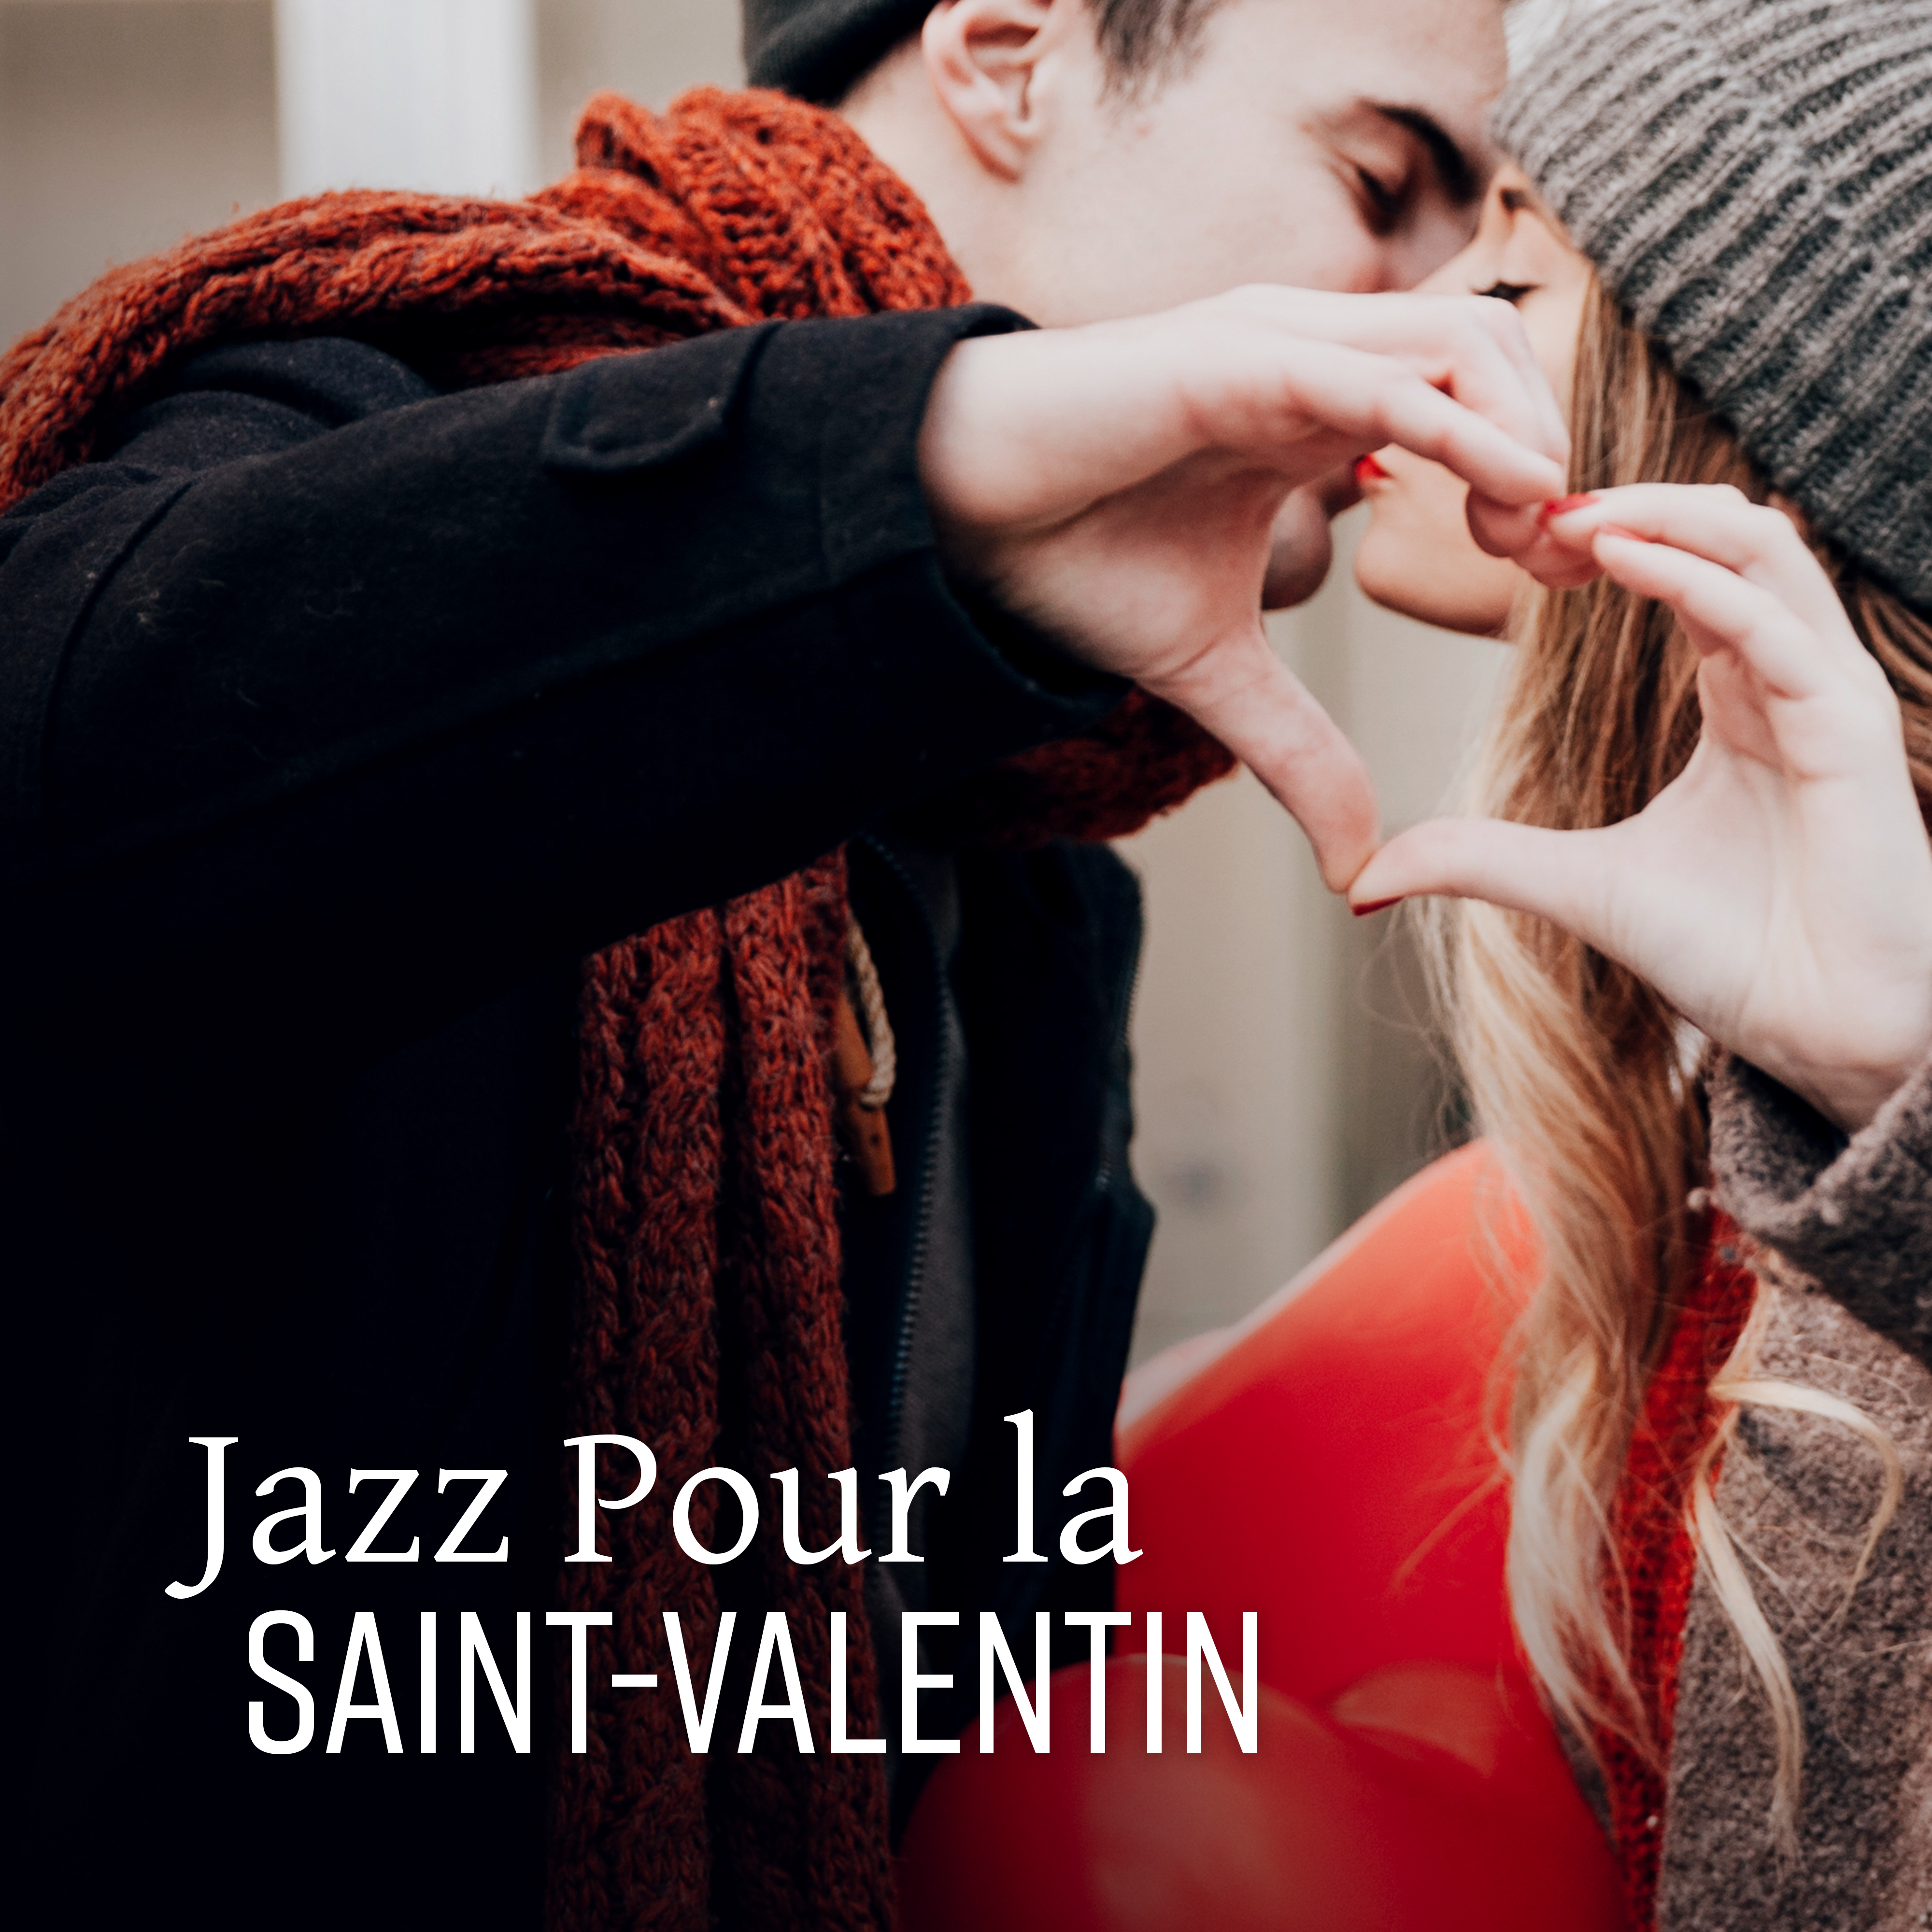 Jazz Pour la Saint-Valentin